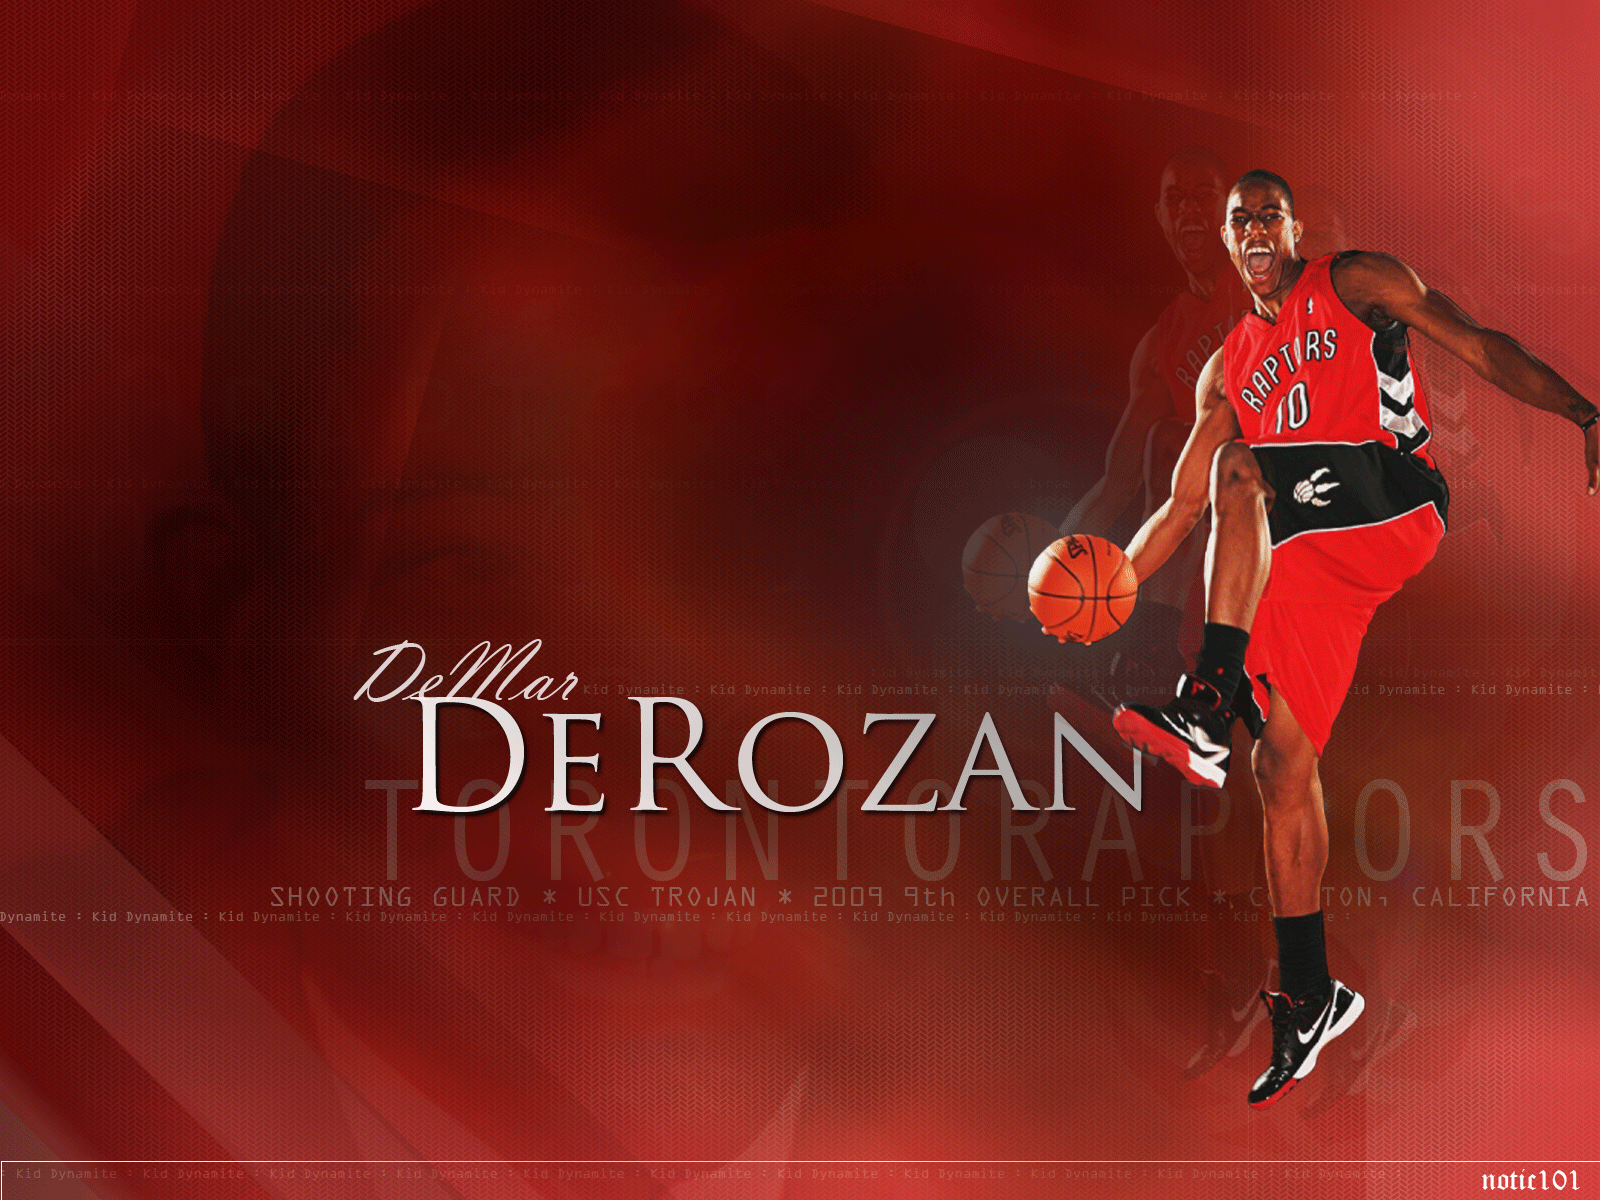 DeMar DeRozan 1920×1200 Widescreen Wallpaper  Basketball Wallpapers at